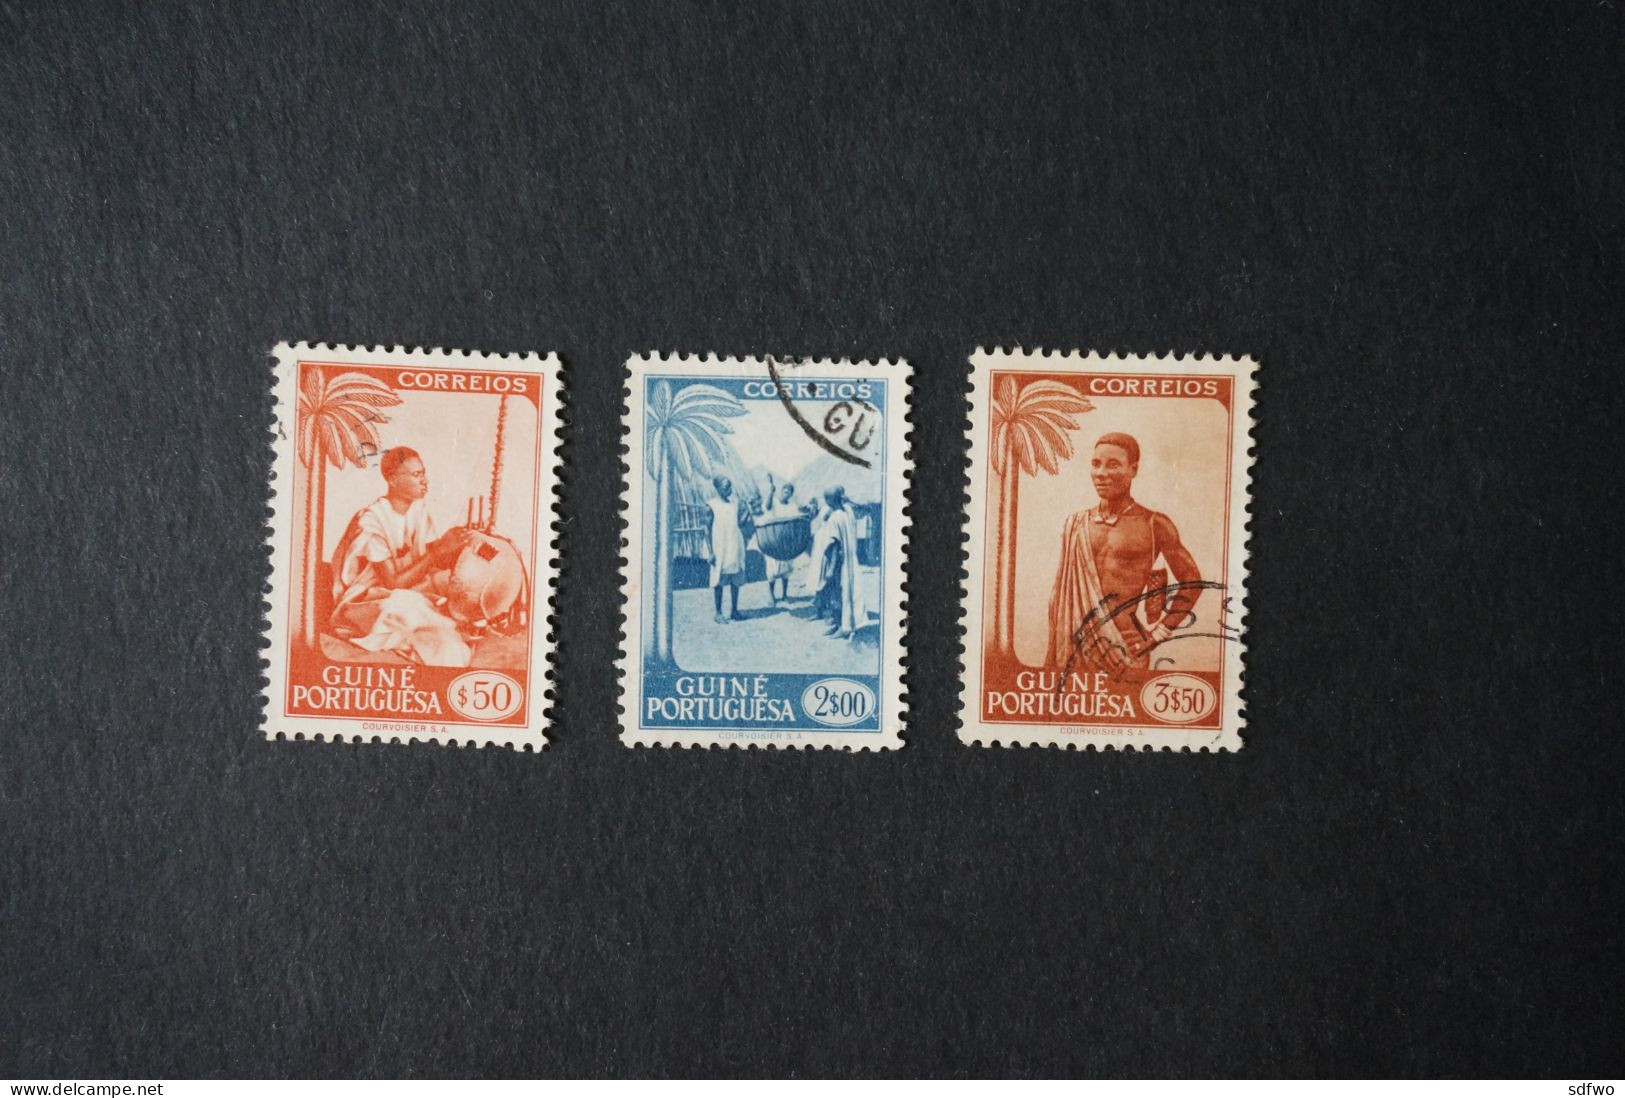 (T1) Portuguese Guiné - 1948 Motifs & Portraits $50, 2$00, 3$50 - Used - Portugiesisch-Guinea